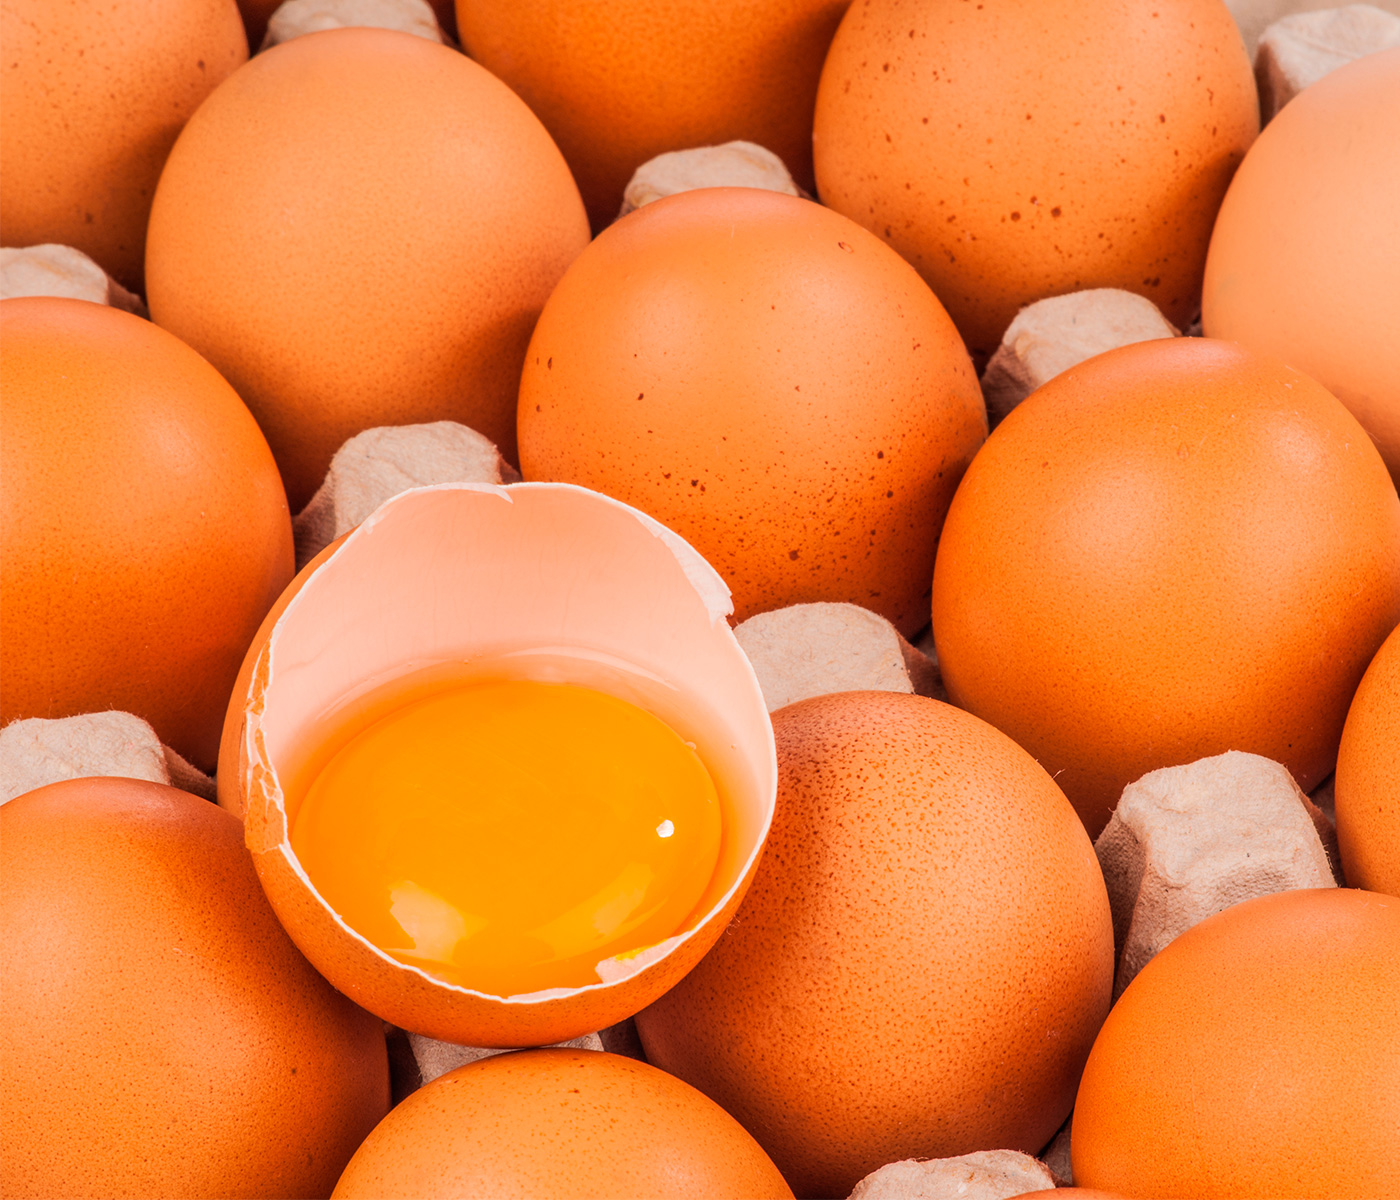 Mitos entre el consumo de huevos y las enfermedades cardiovasculares